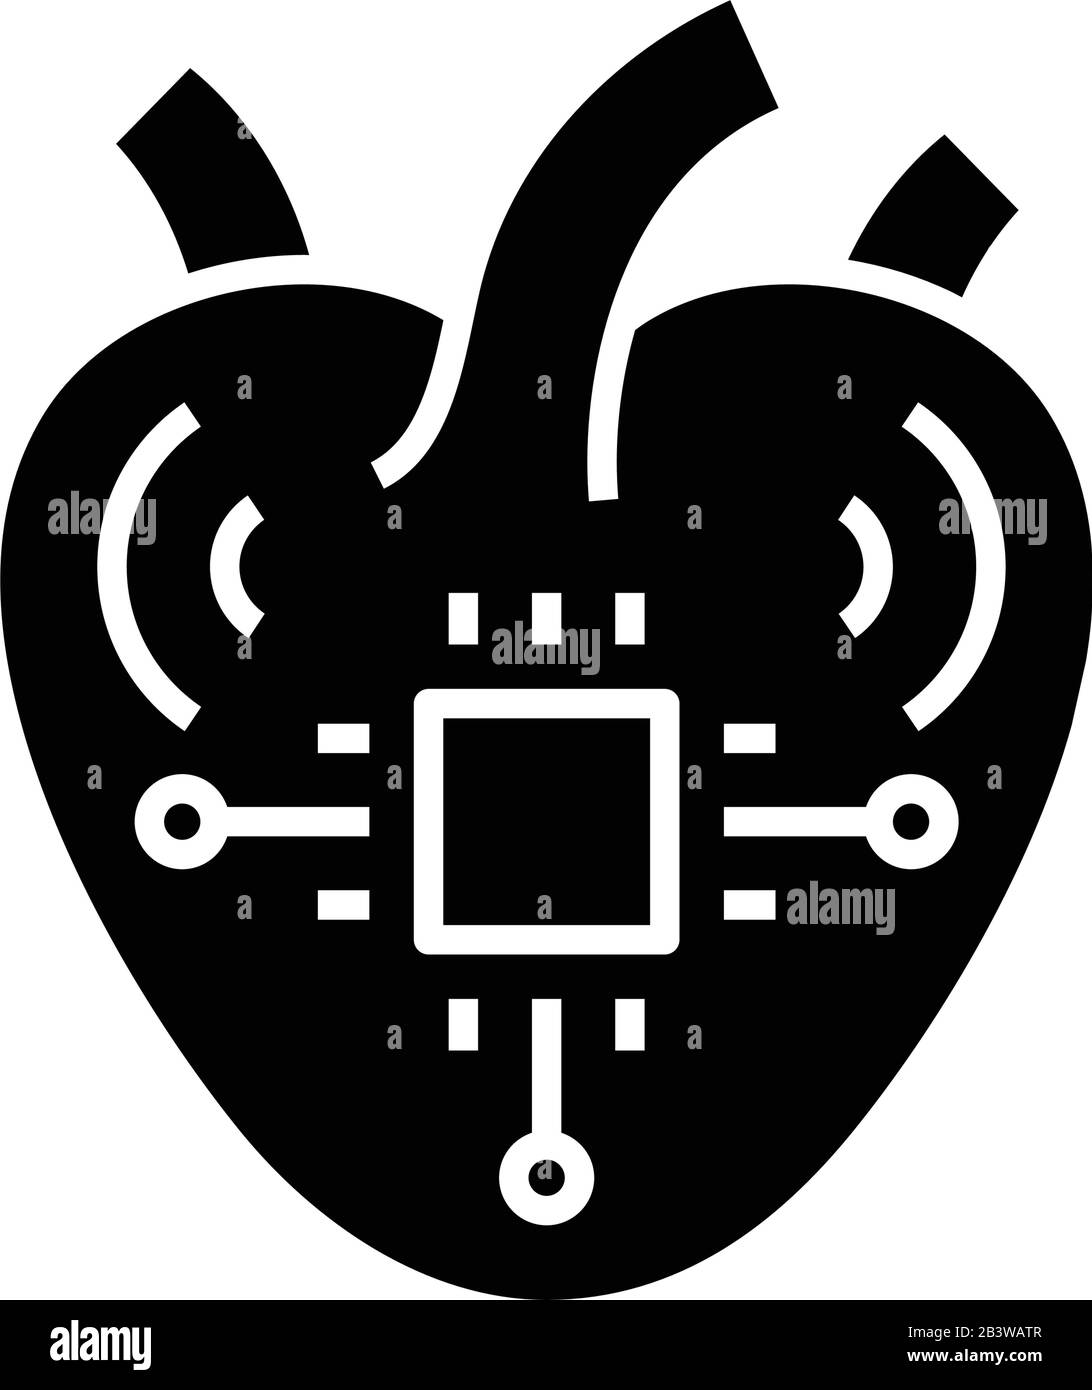 Icône noire en forme de coeur synthétique, illustration conceptuelle, symbole vectoriel plat, signe glyphe. Illustration de Vecteur